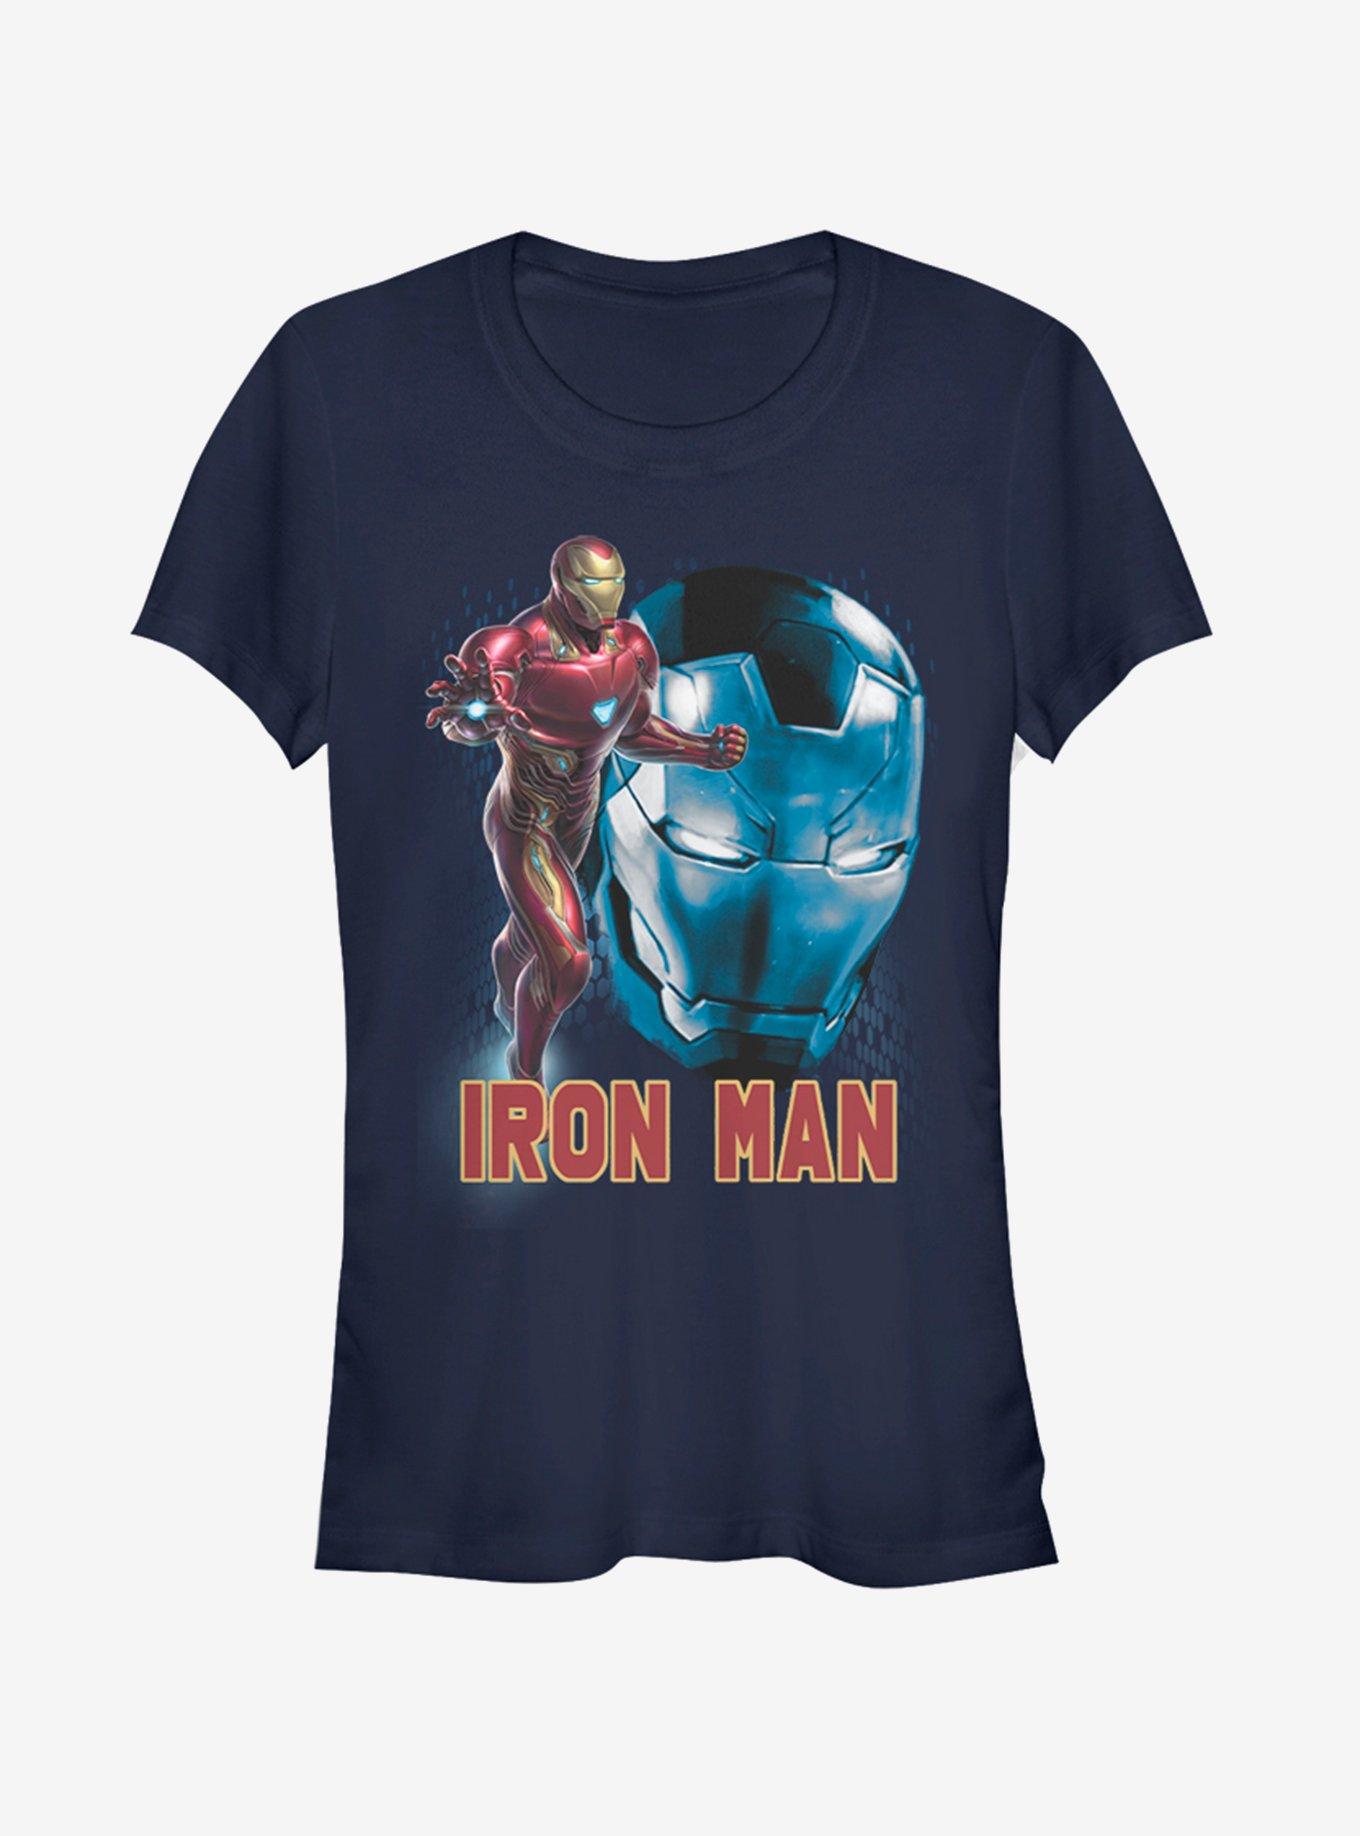 Marvel Avengers: Endgame Iron Man Profile Girls Navy Blue T-Shirt